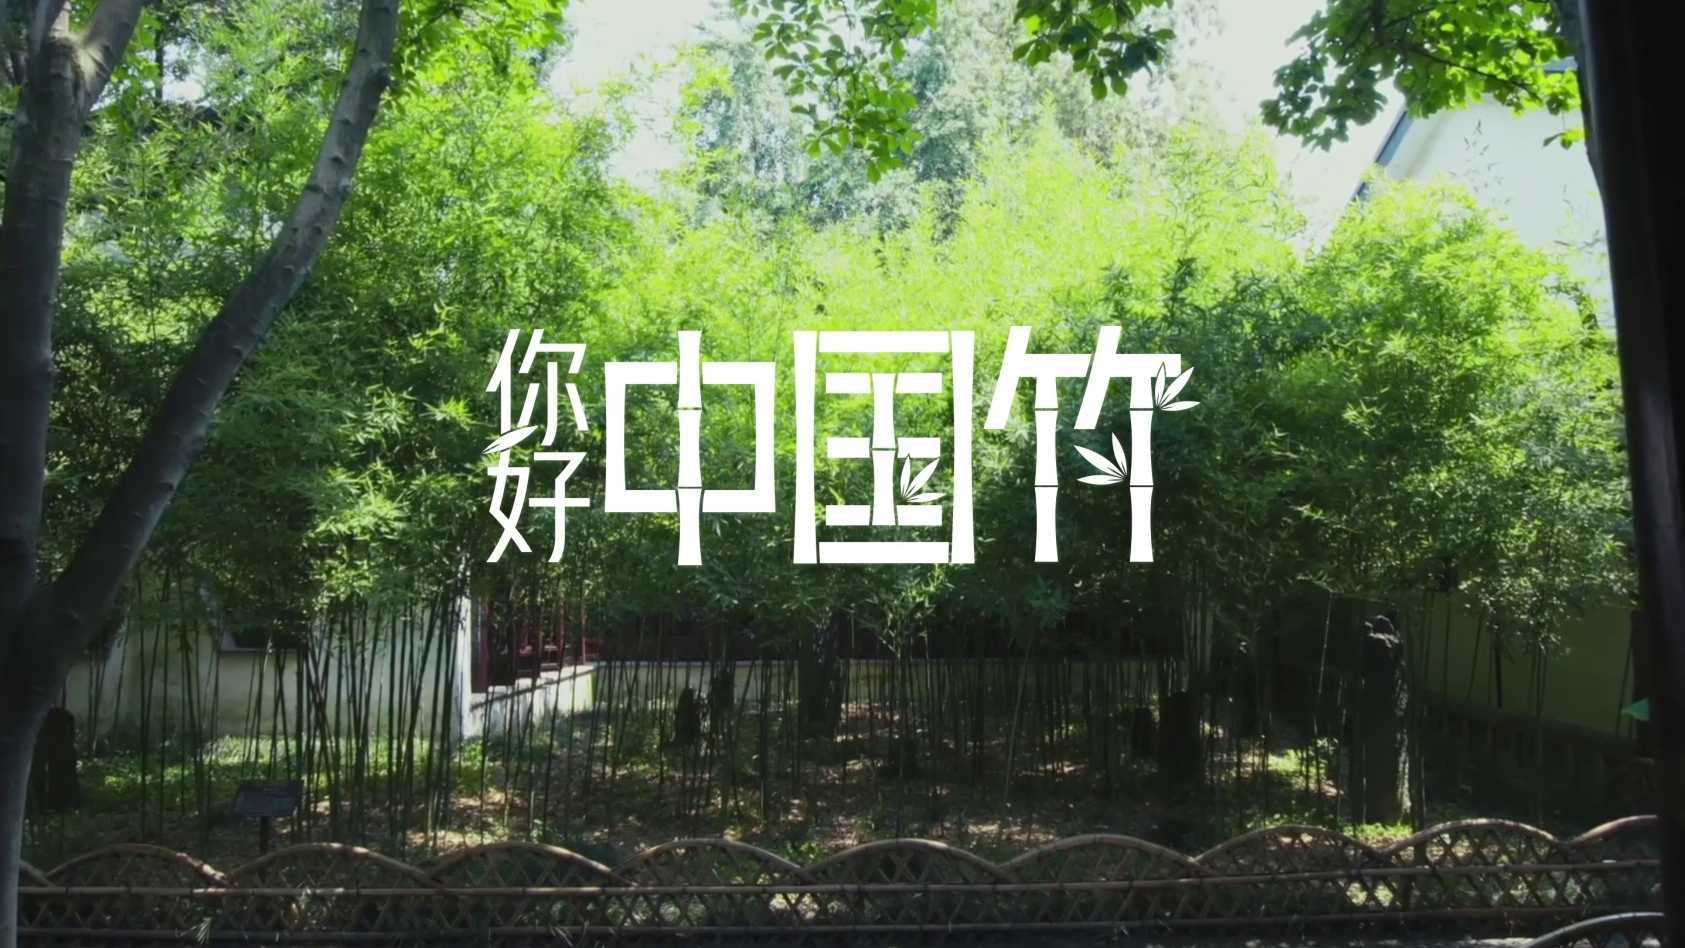 国际竹藤组织 × 人民日报 × 联想 《你好 中国竹》可持续发展行动 启动仪式